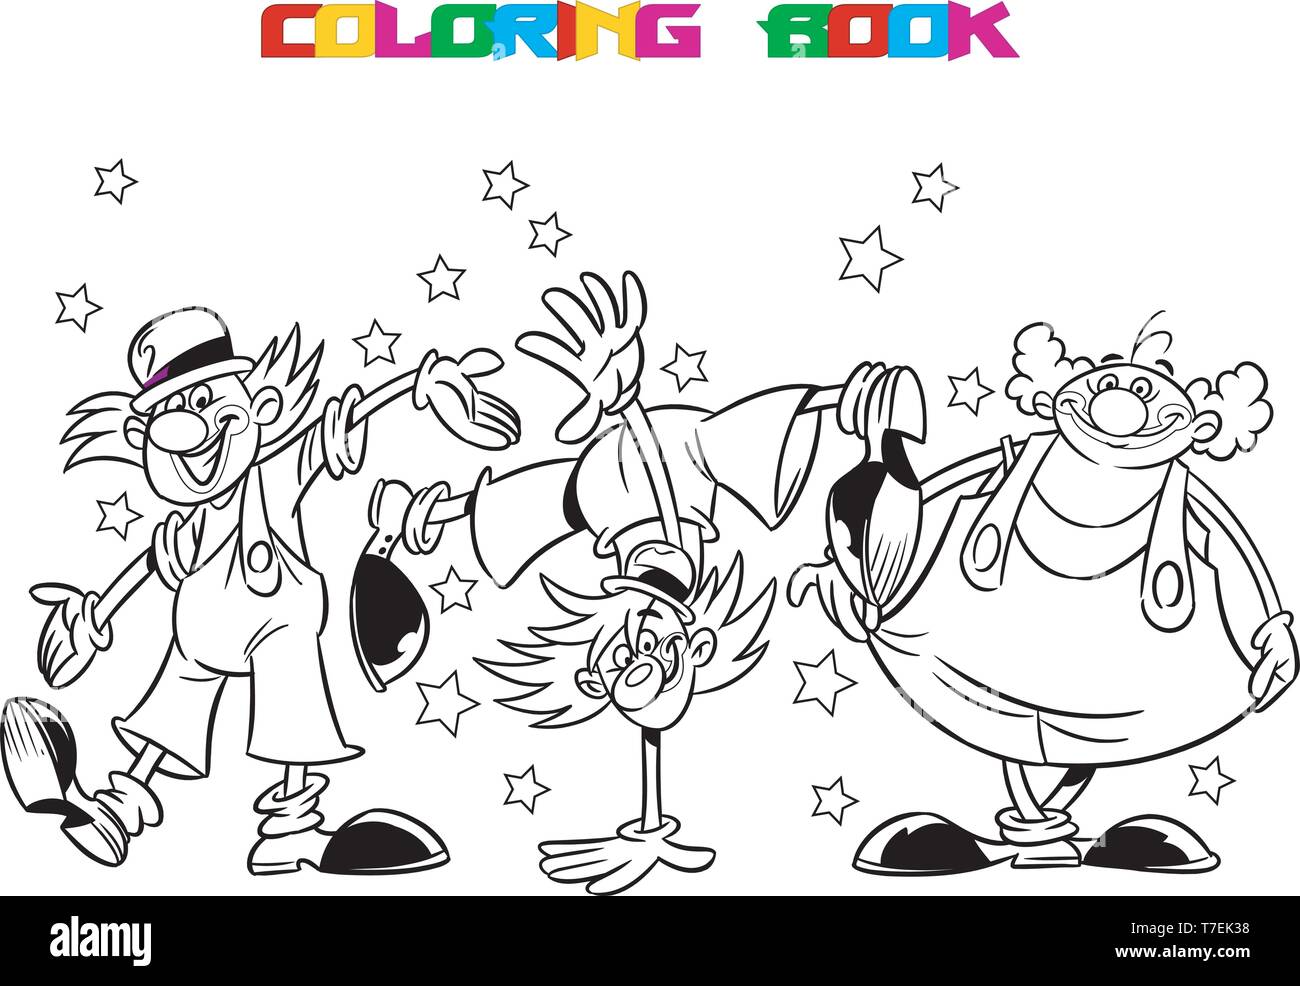 Drei lustige Clowns führt im Zirkus Arena. Ist ein schwarzer Umriss für ein Malbuch. Abbildung im Cartoon Stil gemacht, auf separaten Ebenen Stock Vektor